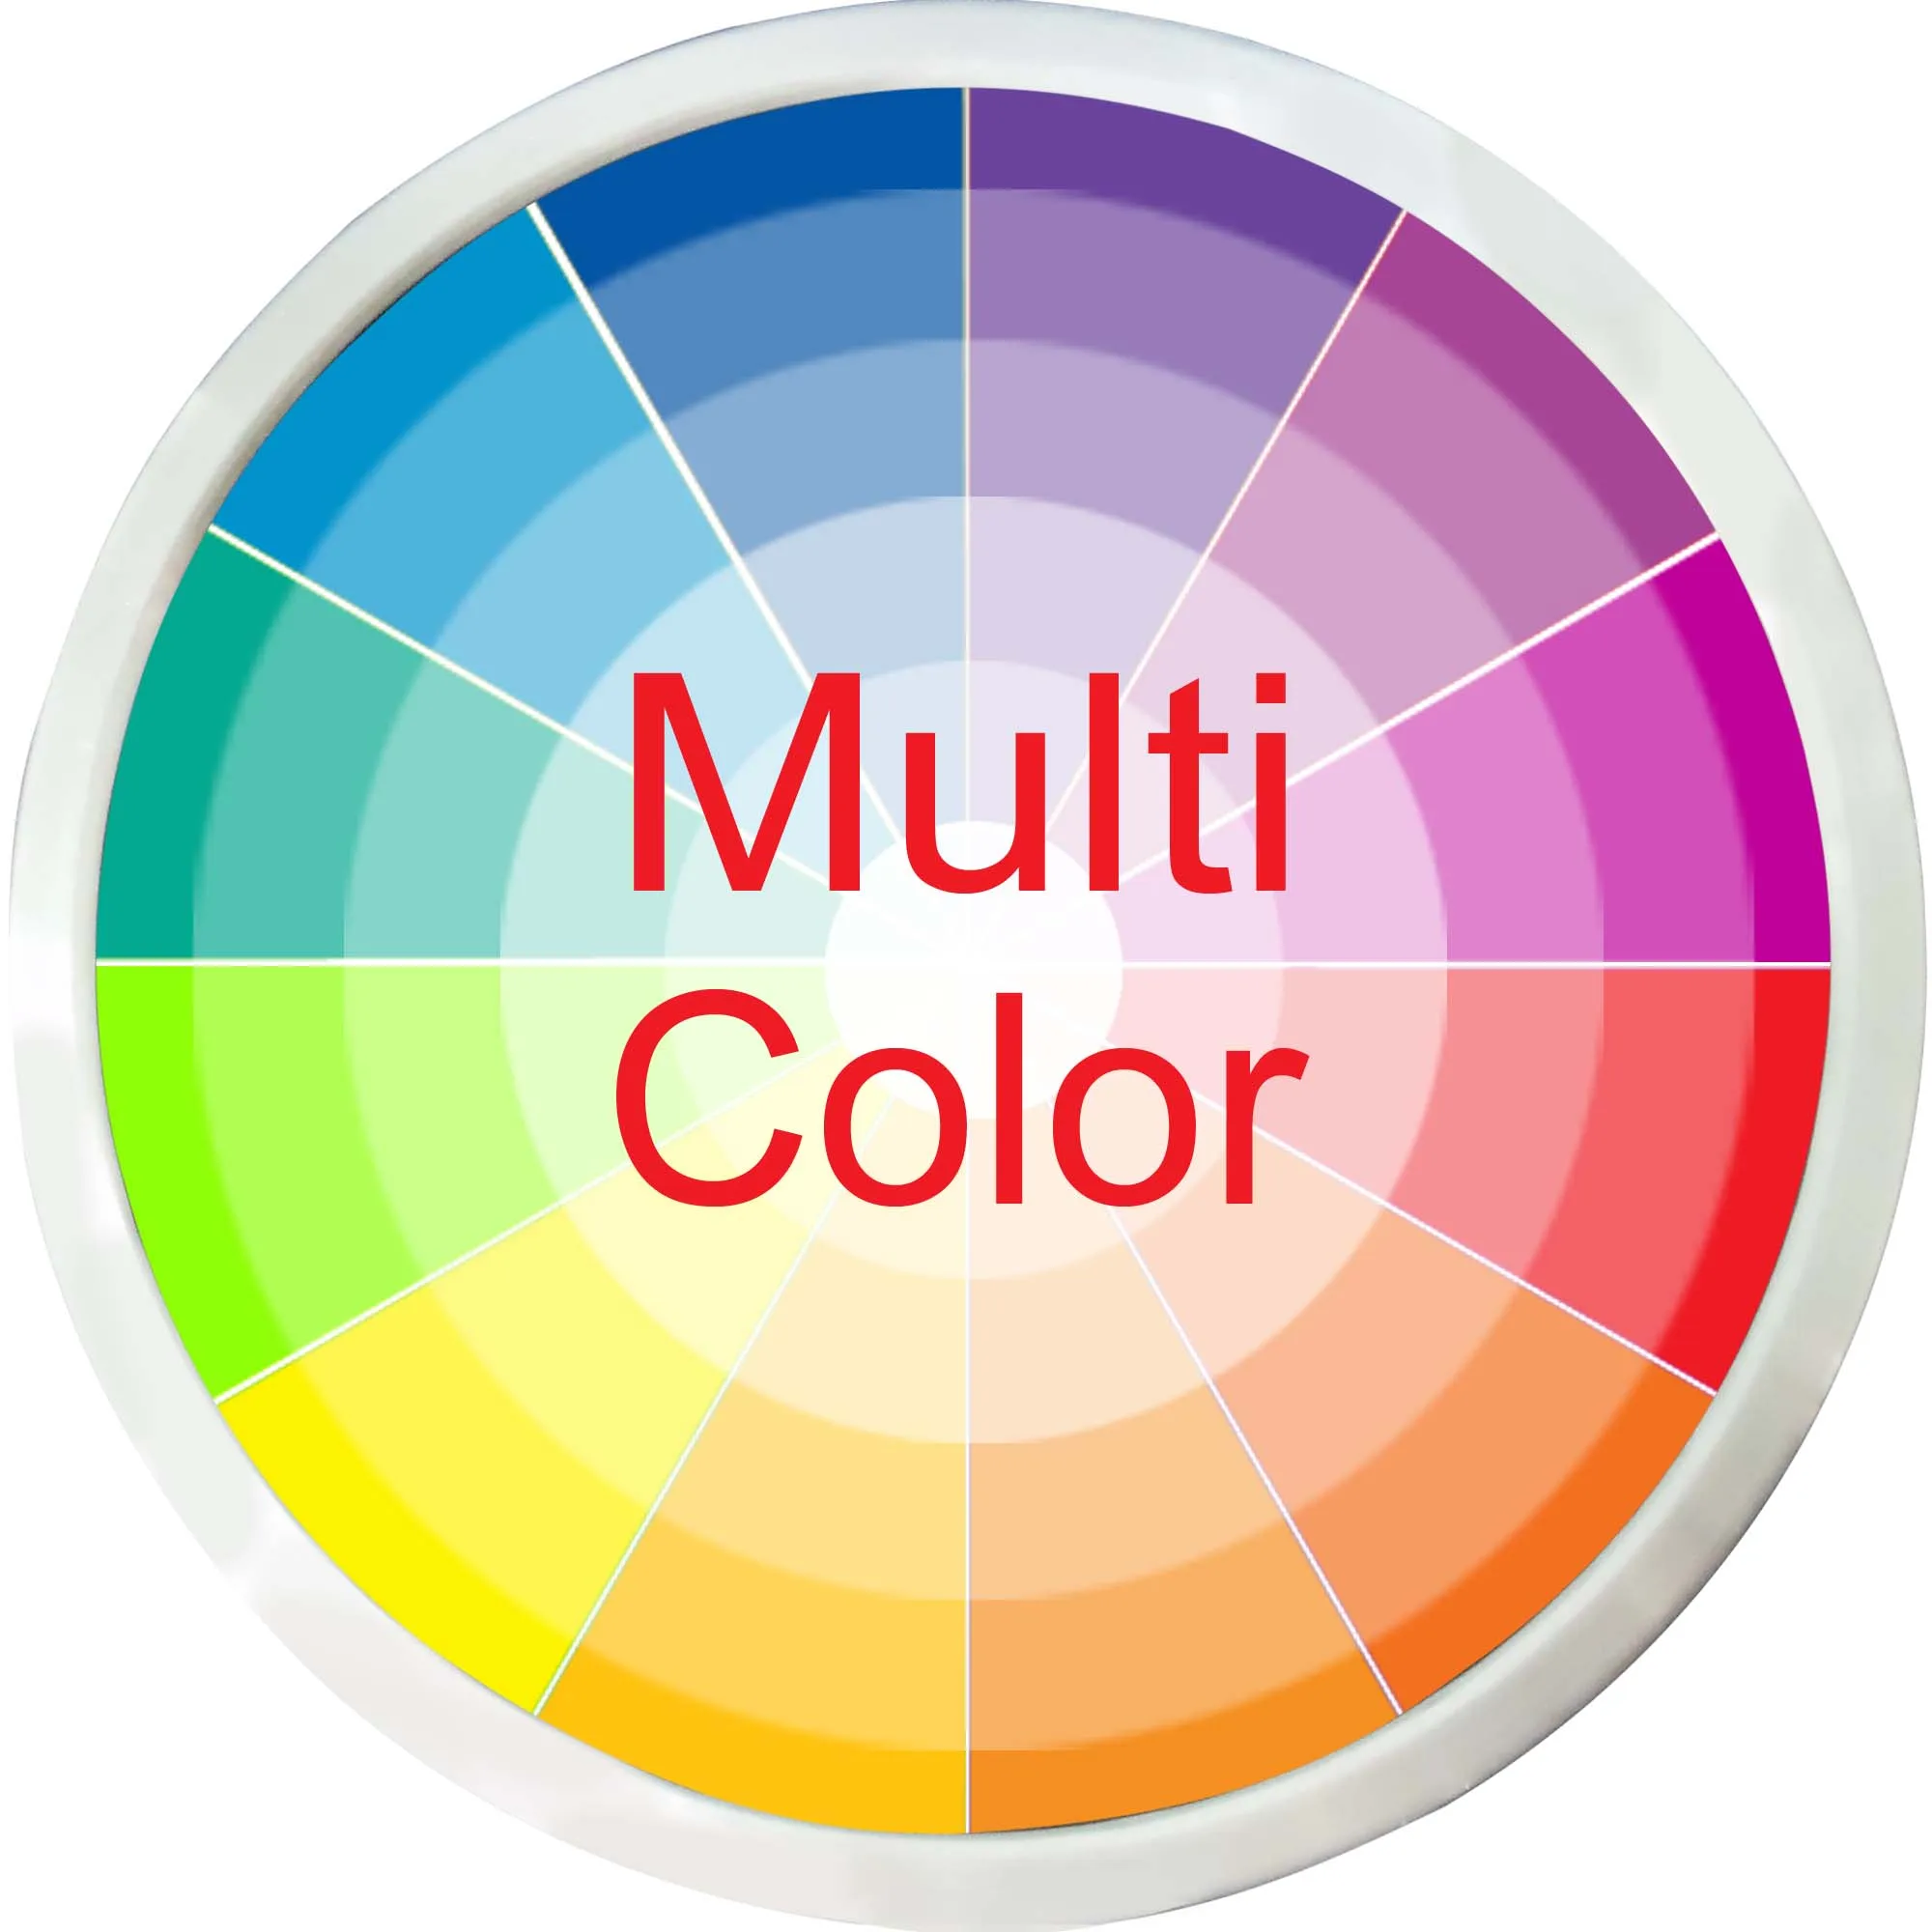 P-tm именная индивидуальная пивная кружка для домашнего бара светодиодный неоновый знак 7 цветов или многоцветный с 5 размерами круглой или прямоугольной формы